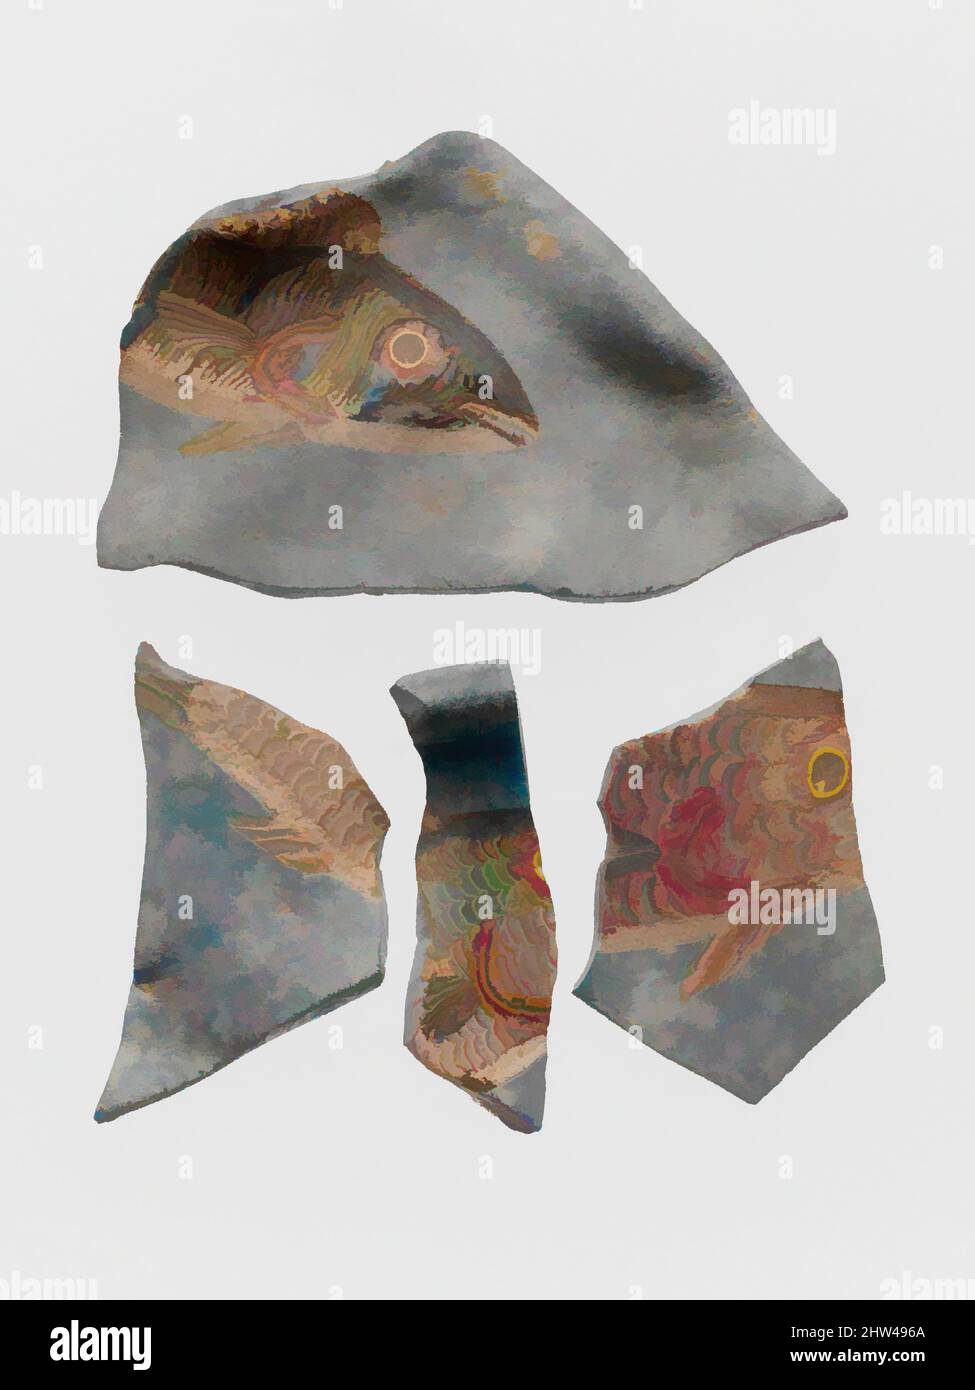 Art inspiré par des fragments de verre de bol décoré de poisson en mosaïque, impérial, 1st–3rd siècle A.D., romain, verre; Moulé, hors tout (a) : 1 3/4 x 1 3/16 po. (4,4 x 3 cm), verre, les fragments représentent des poissons de vie nageant dans une rivière, un lac ou une piscine, indiquée par le fond en verre bleu, œuvres classiques modernisées par Artotop avec une touche de modernité. Formes, couleur et valeur, impact visuel accrocheur sur l'art émotions par la liberté d'œuvres d'art d'une manière contemporaine. Un message intemporel qui cherche une nouvelle direction créative. Artistes qui se tournent vers le support numérique et créent le NFT Artotop Banque D'Images